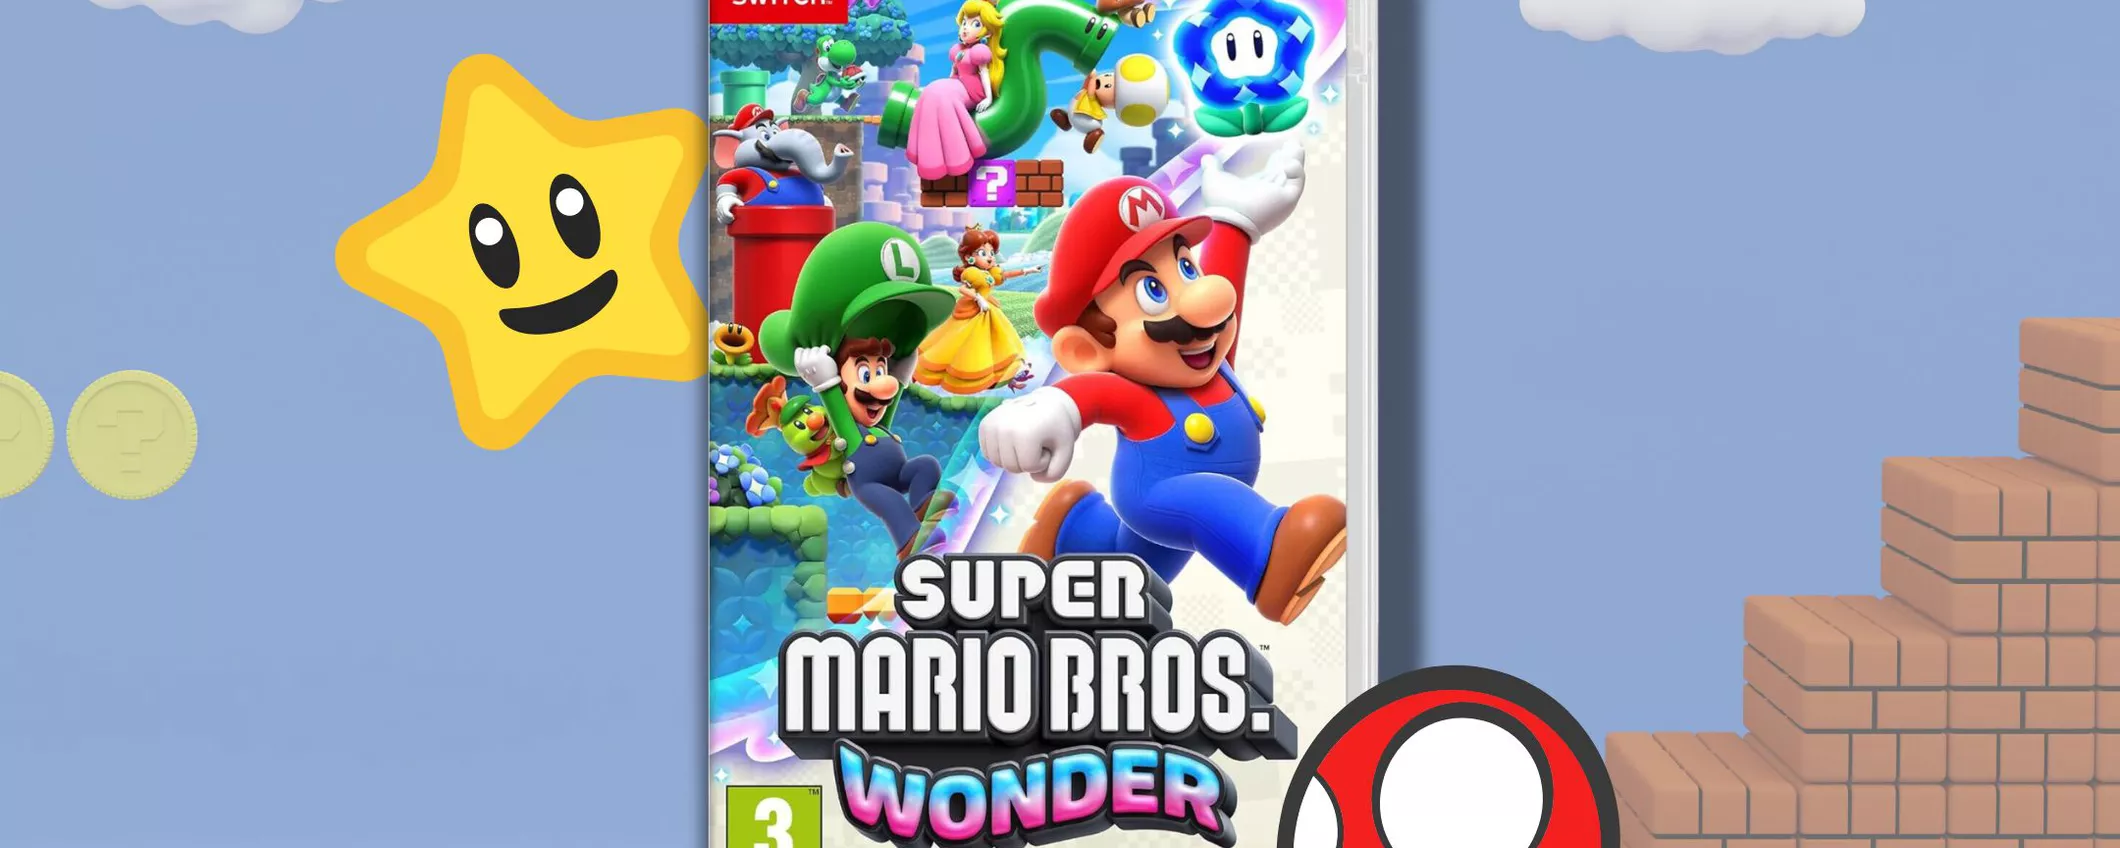 IMPERDIBILE Nintendo Switch Super Mario Bros Wonder: inserisci il CODICE SCONTO!